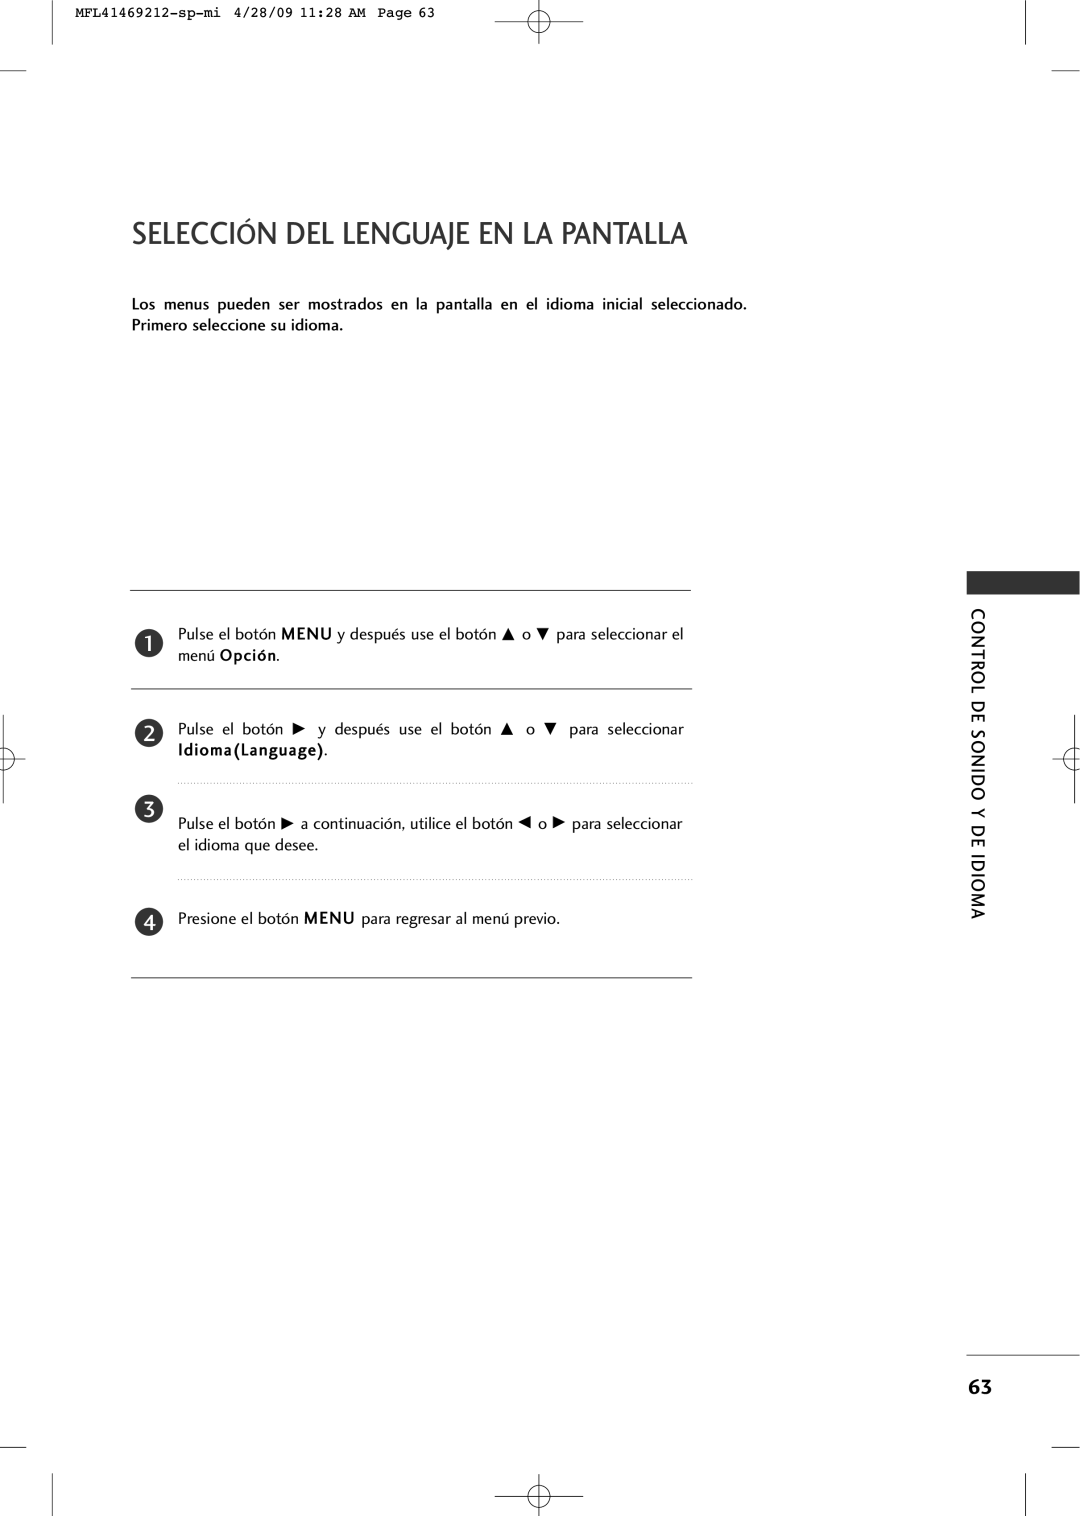 LG Electronics 2230R-MA manual Selección Del Lenguaje En La Pantalla, Control De Sonido Y De Idioma 